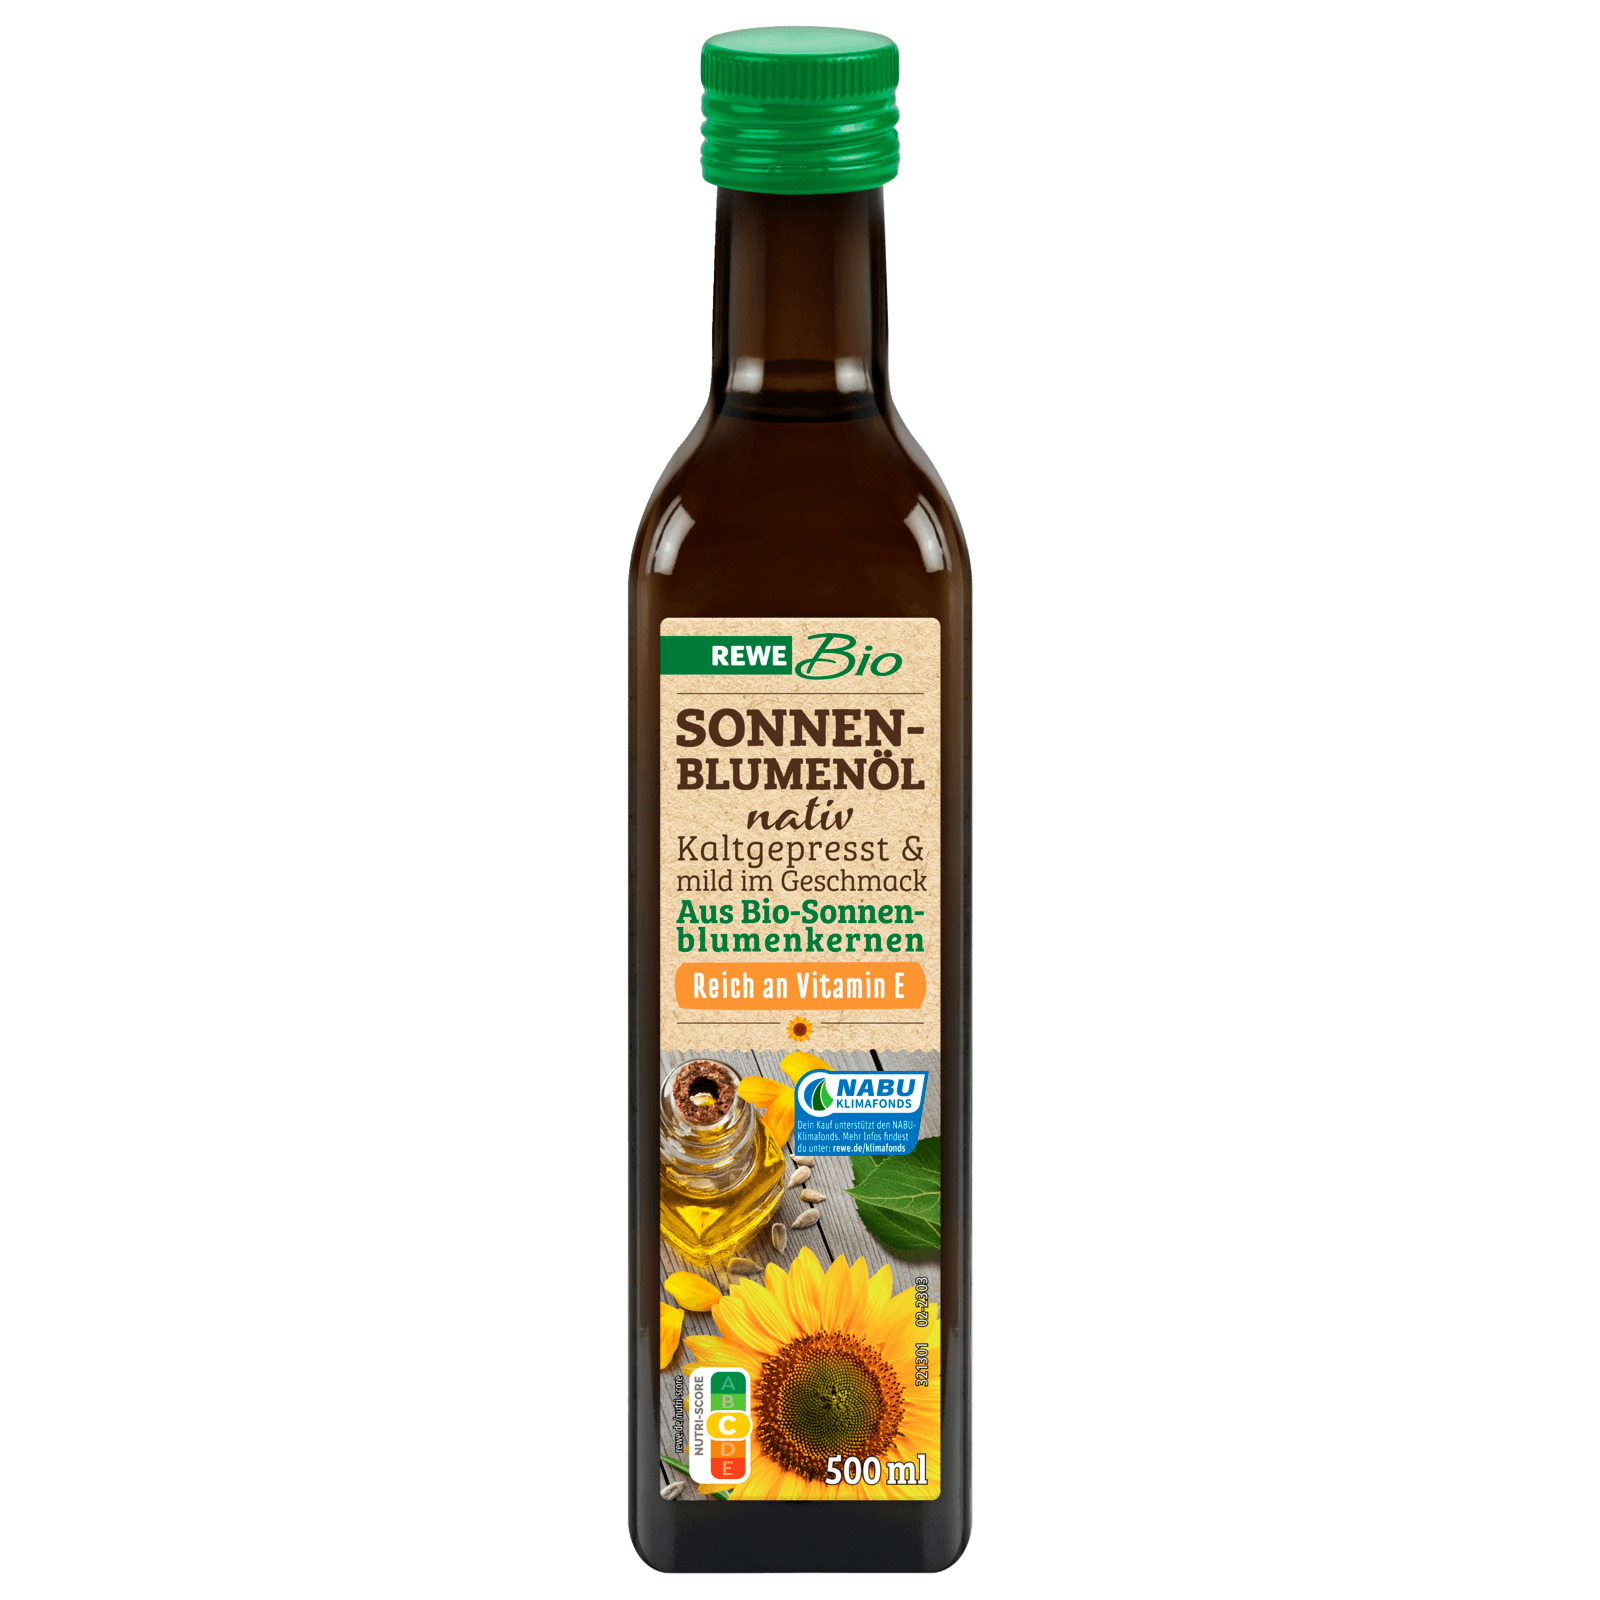 REWE Bio Sonnenblumenöl nativ 500ml